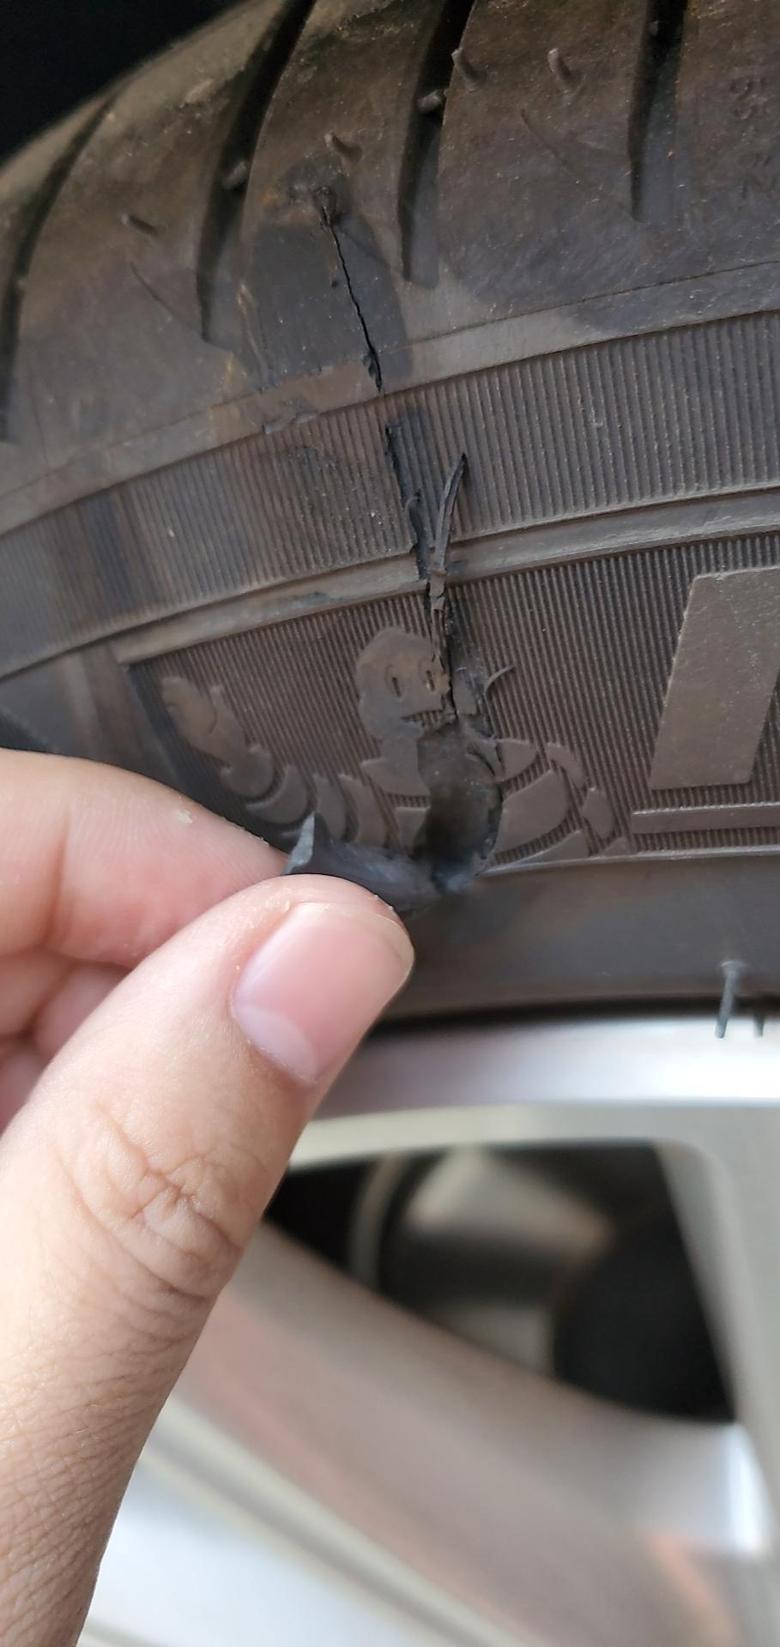 沃尔沃s90 车胎被划伤了，这种情况需要更换嘛，十一想出个远门